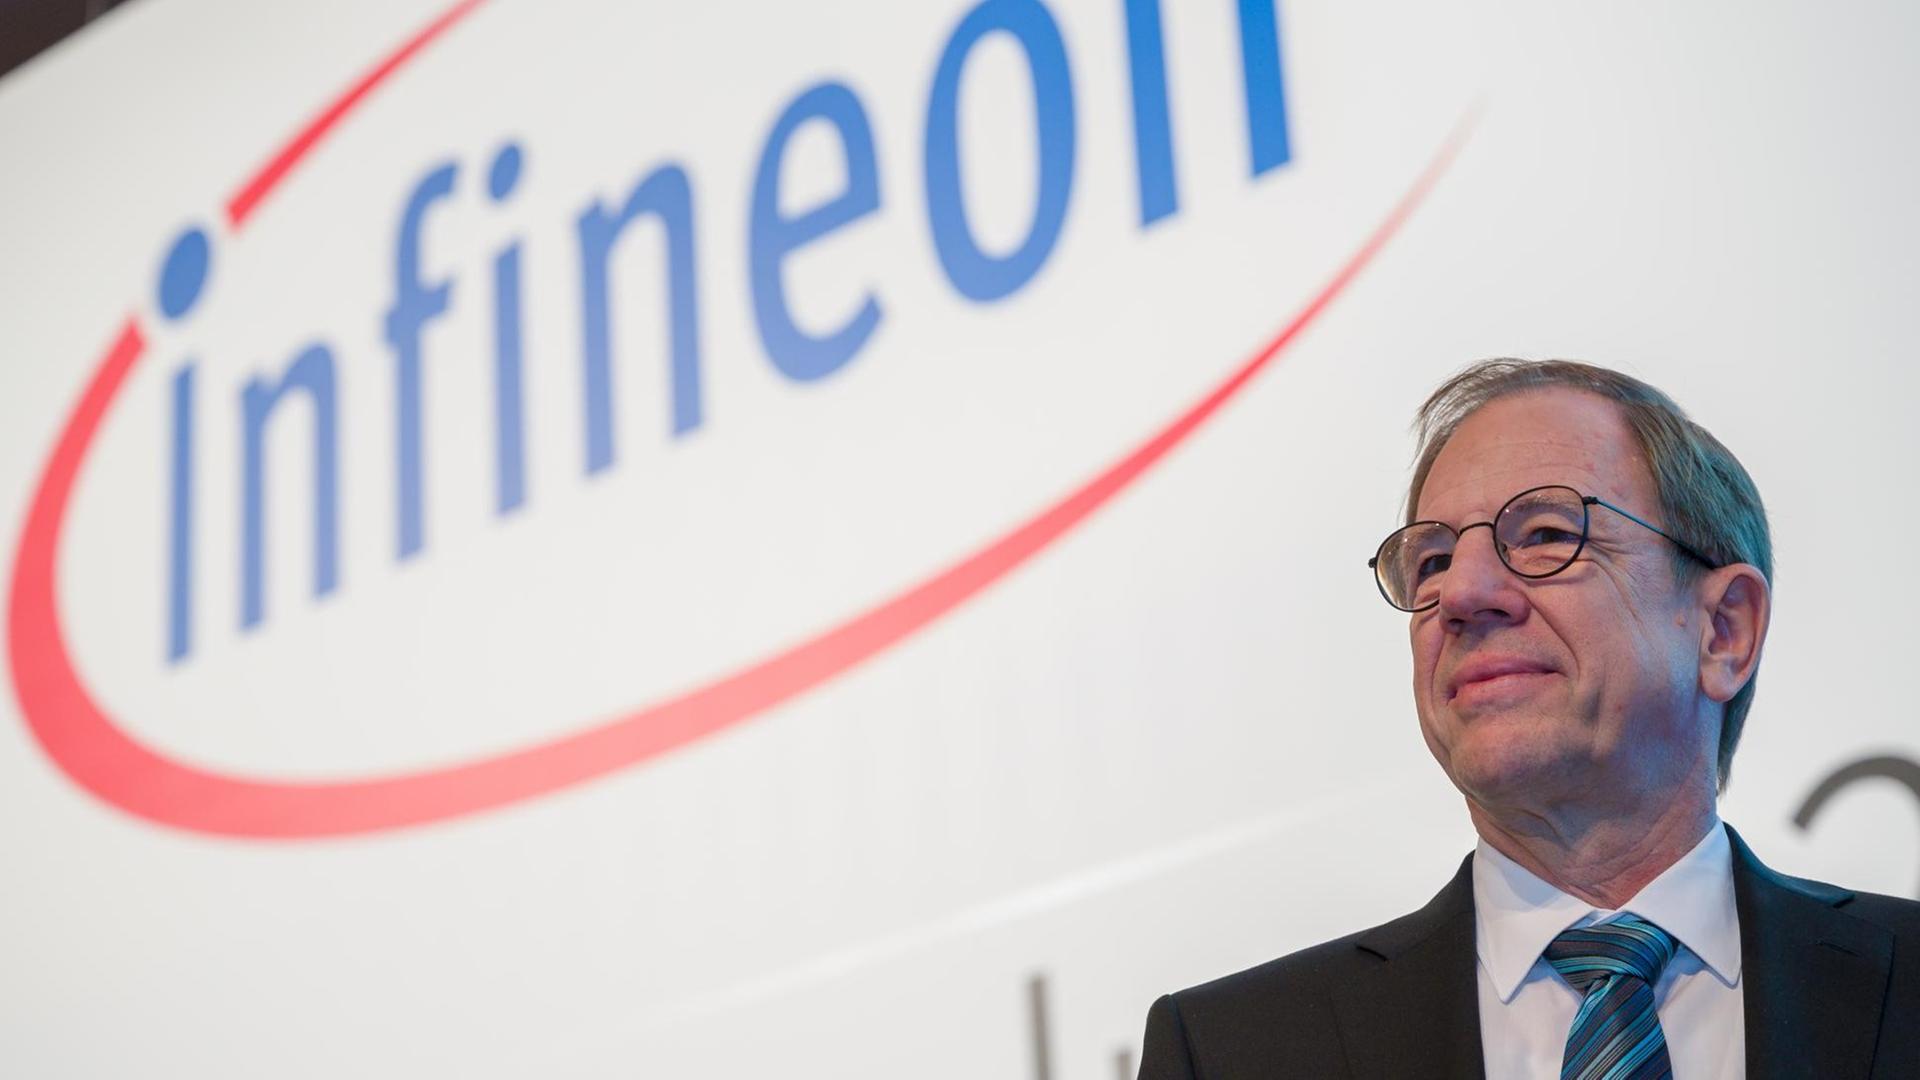 Reinhard Ploss, Infineon-Vorstandsvorsitzender, steht vor Beginn der Infineon Hauptversammlung auf der Bühne.